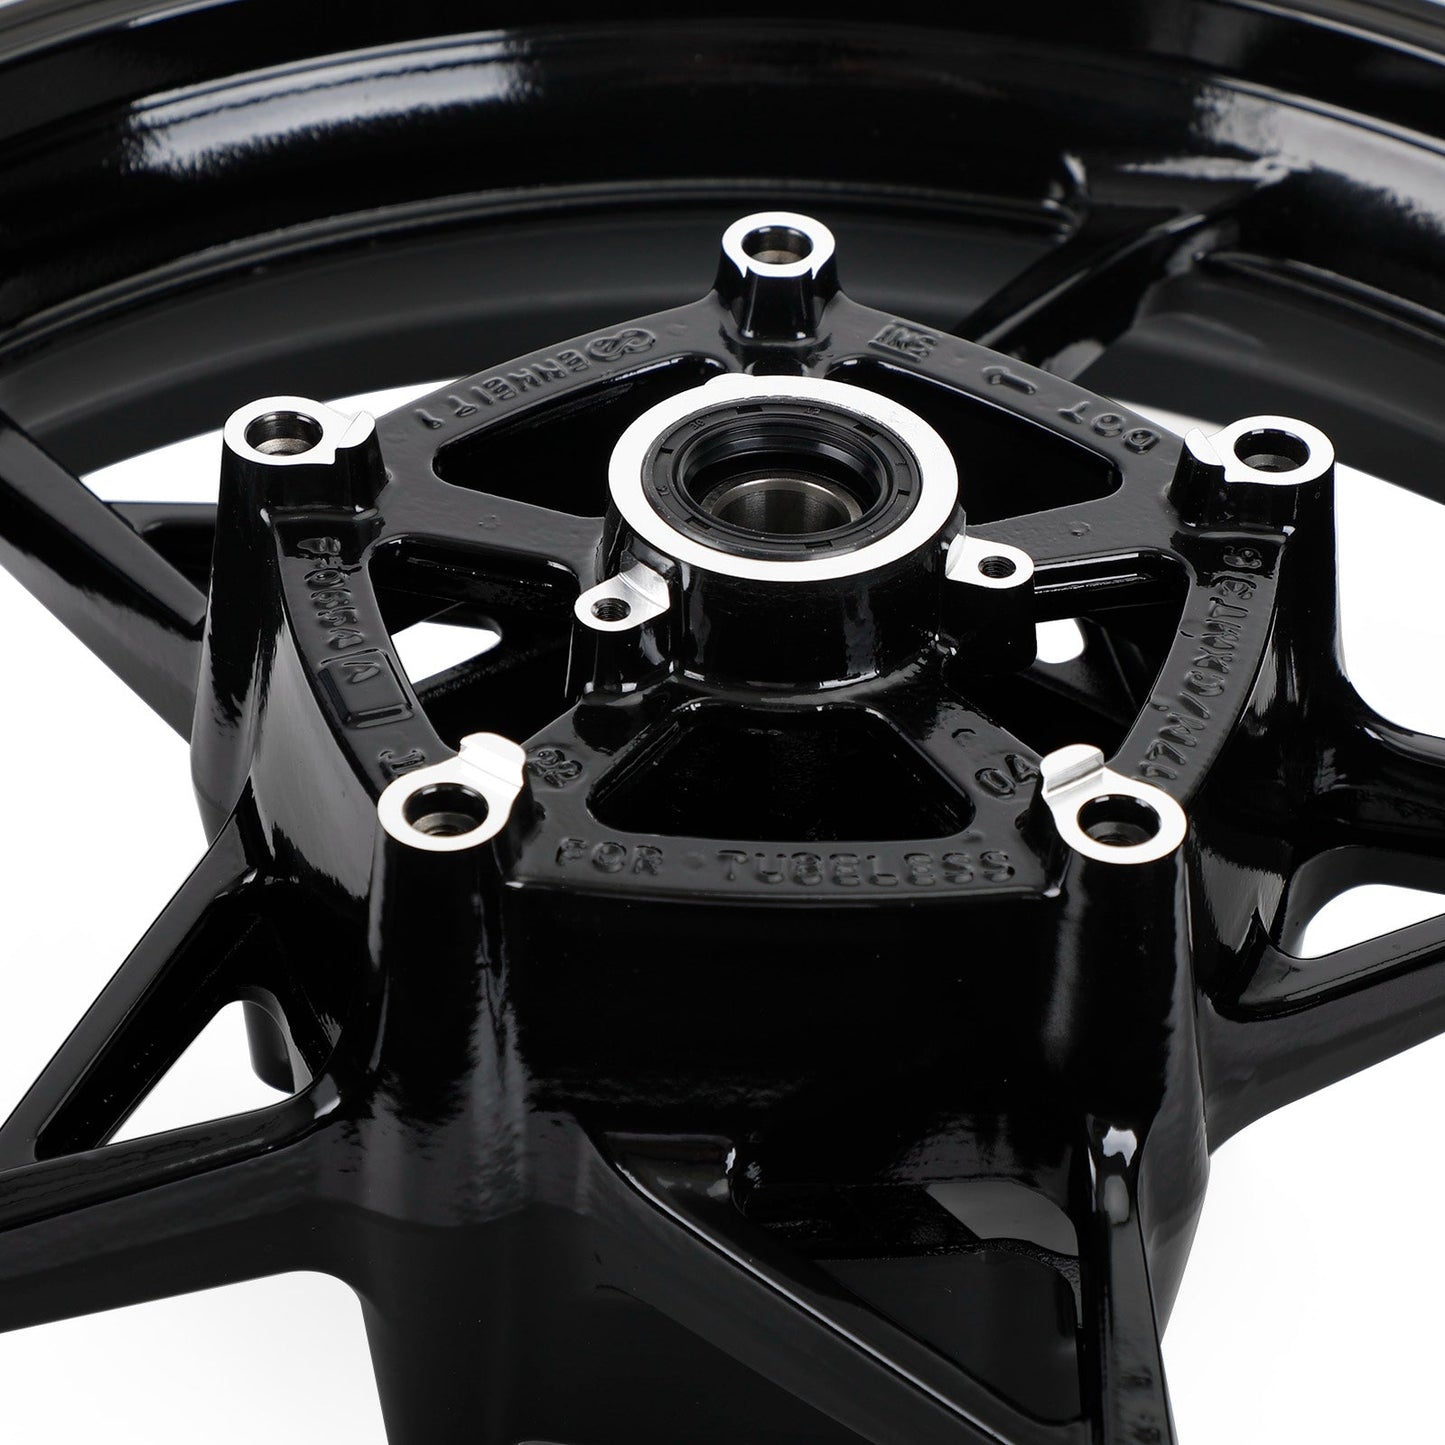 Black Front Wheel Rim For Kawasaki Z900 ZR900 / Z900RS / Cafe 2017-2021